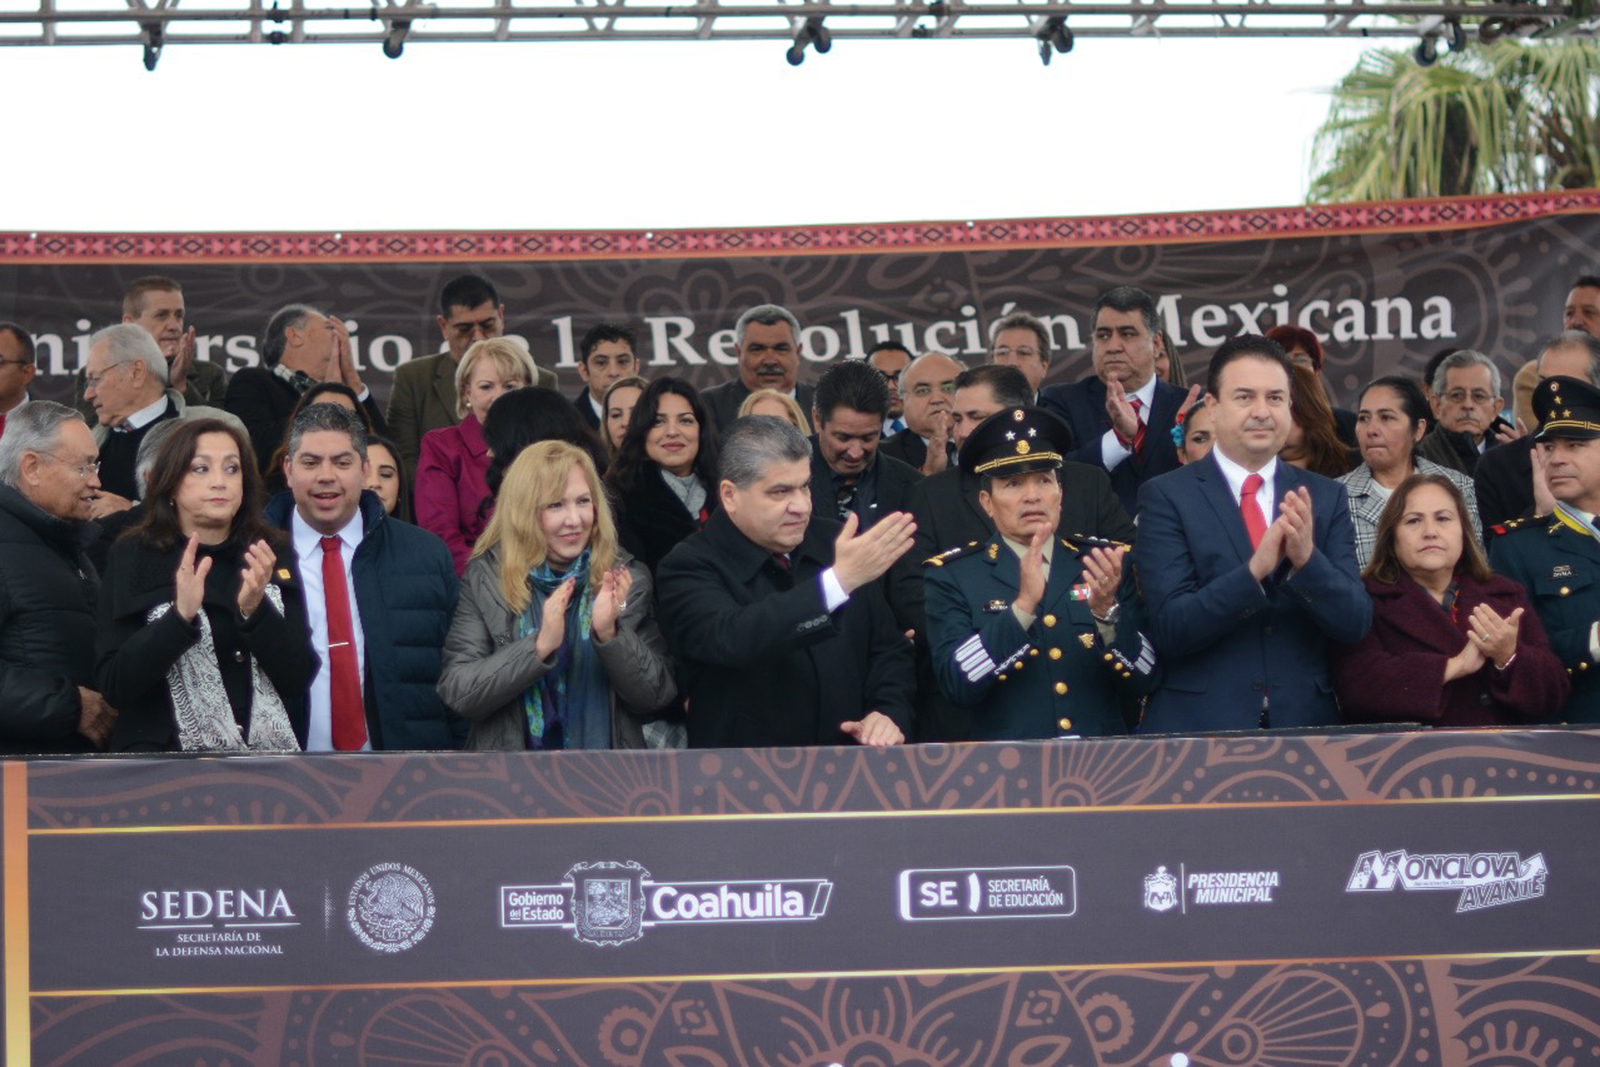 Evento. El gobernador del Estado, Miguel Ángel Riquelme Solís, encabezó el tradicional Desfile Revolucionario frente a las instalaciones del Estadio Monclova.